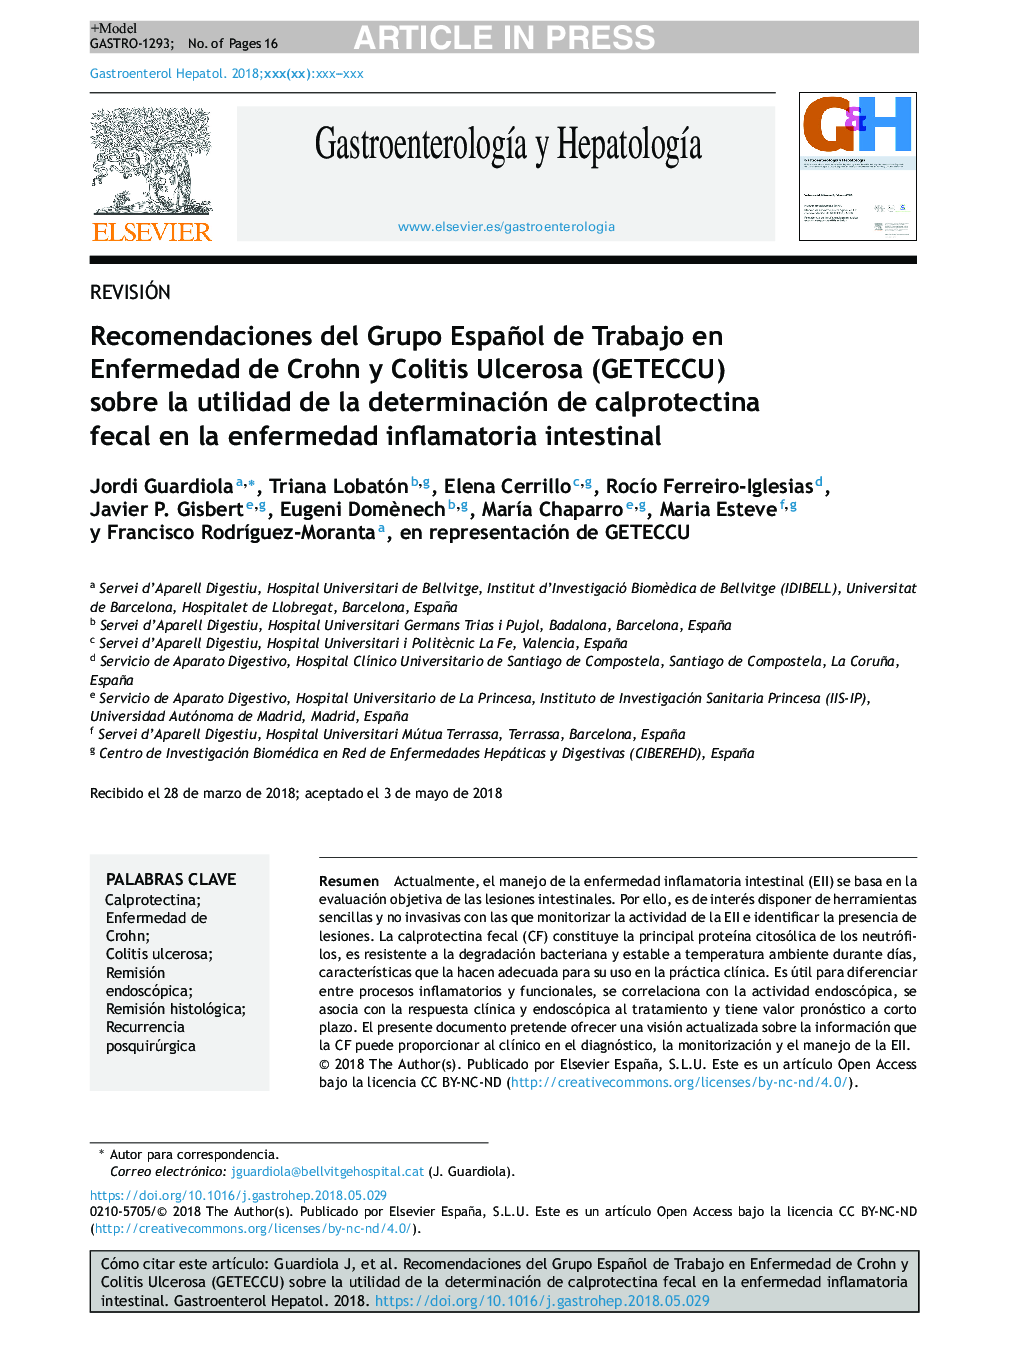 Recomendaciones del Grupo Español de Trabajo en Enfermedad de Crohn y Colitis Ulcerosa (GETECCU) sobre la utilidad de la determinación de calprotectina fecal en la enfermedad inflamatoria intestinal